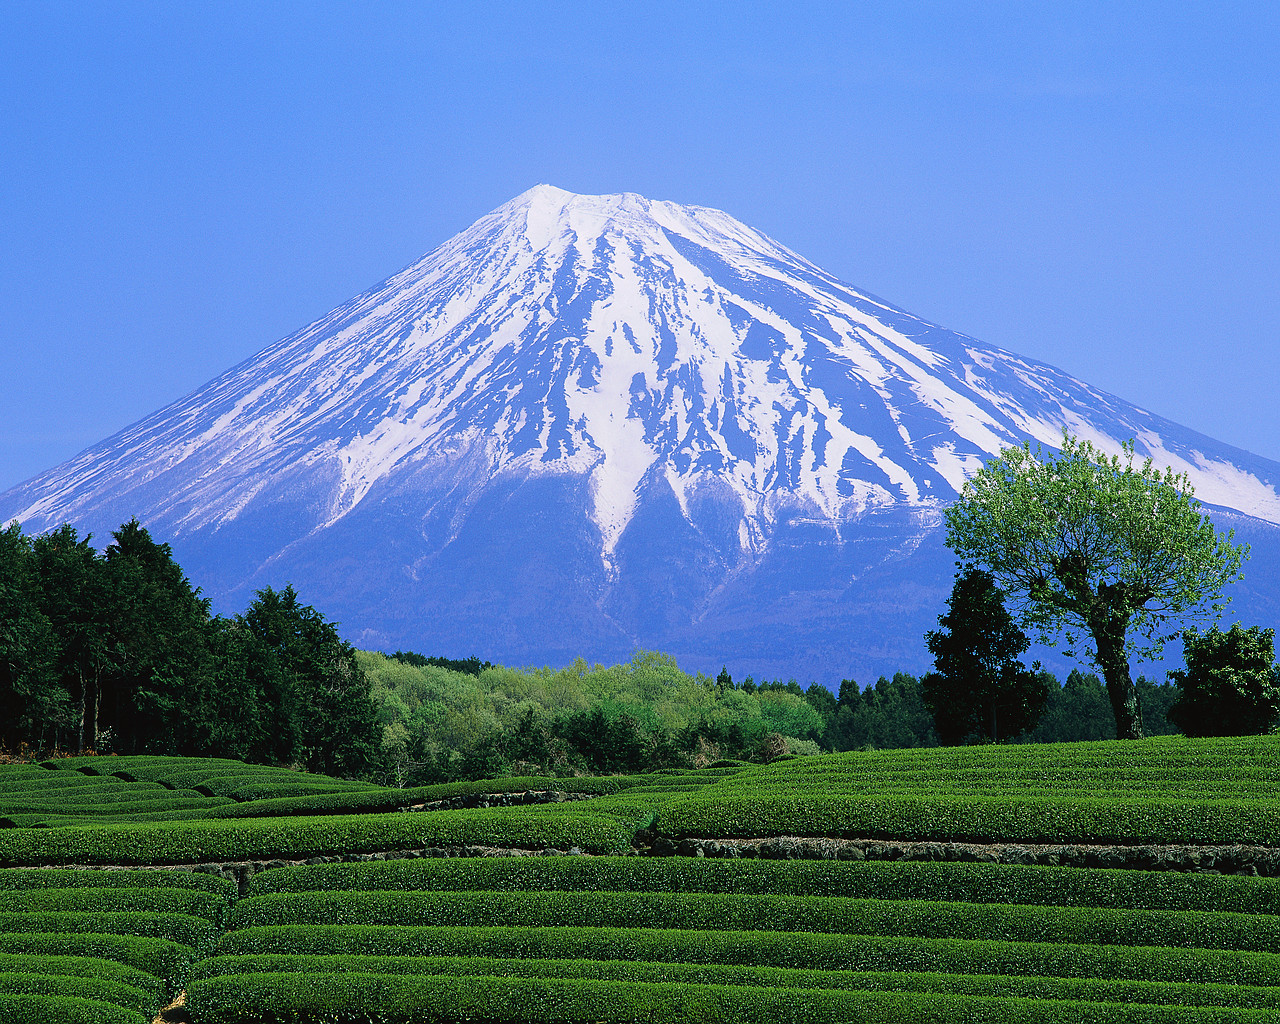 Green Tea Field and Mount Fuji